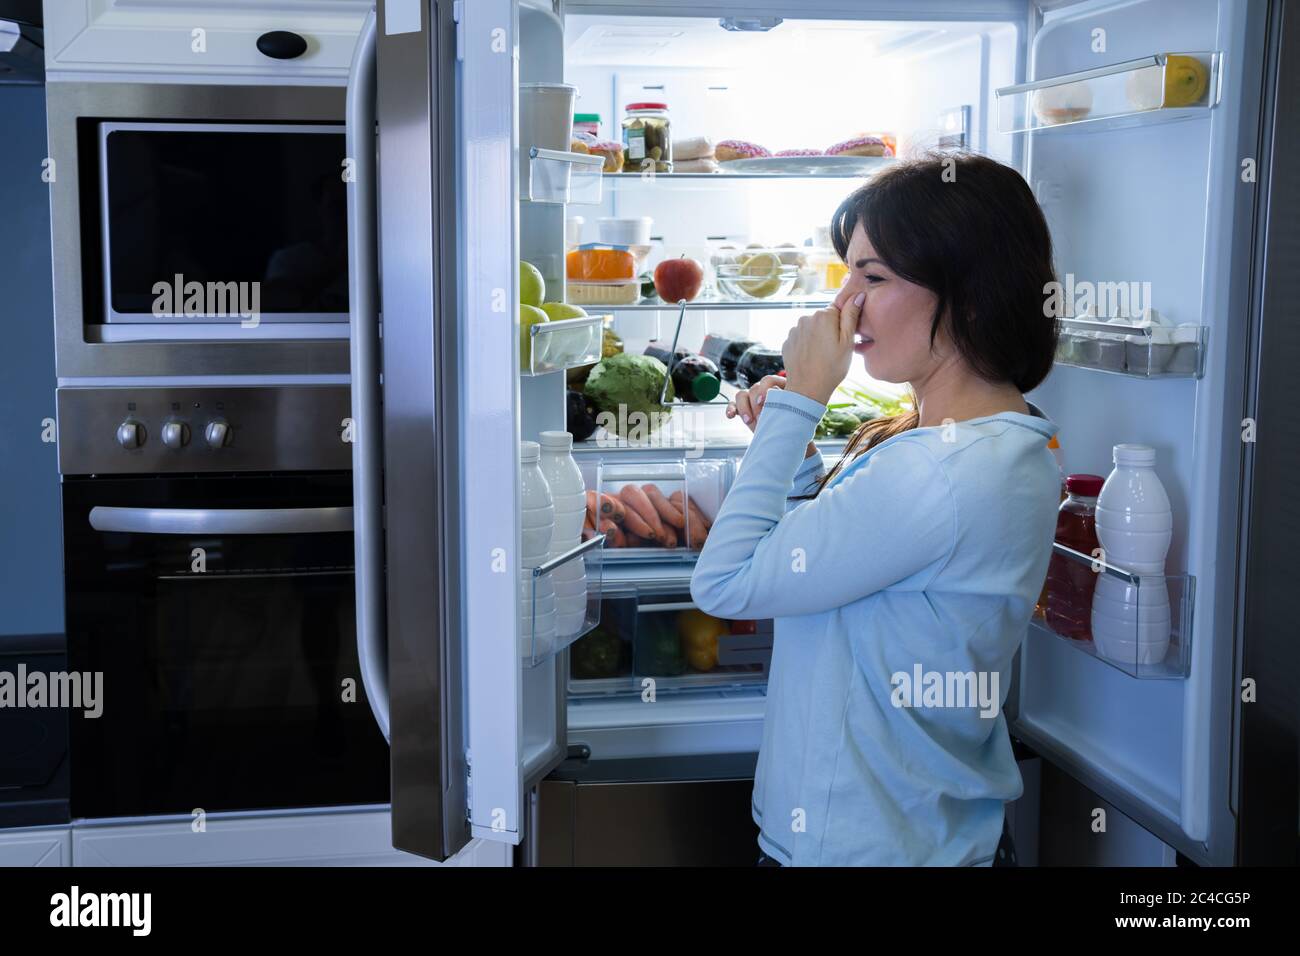 Faules Essen Schlechter Geruch Oder Gestank Im Kühlschrank Oder Kühlschrank  Stockfotografie - Alamy